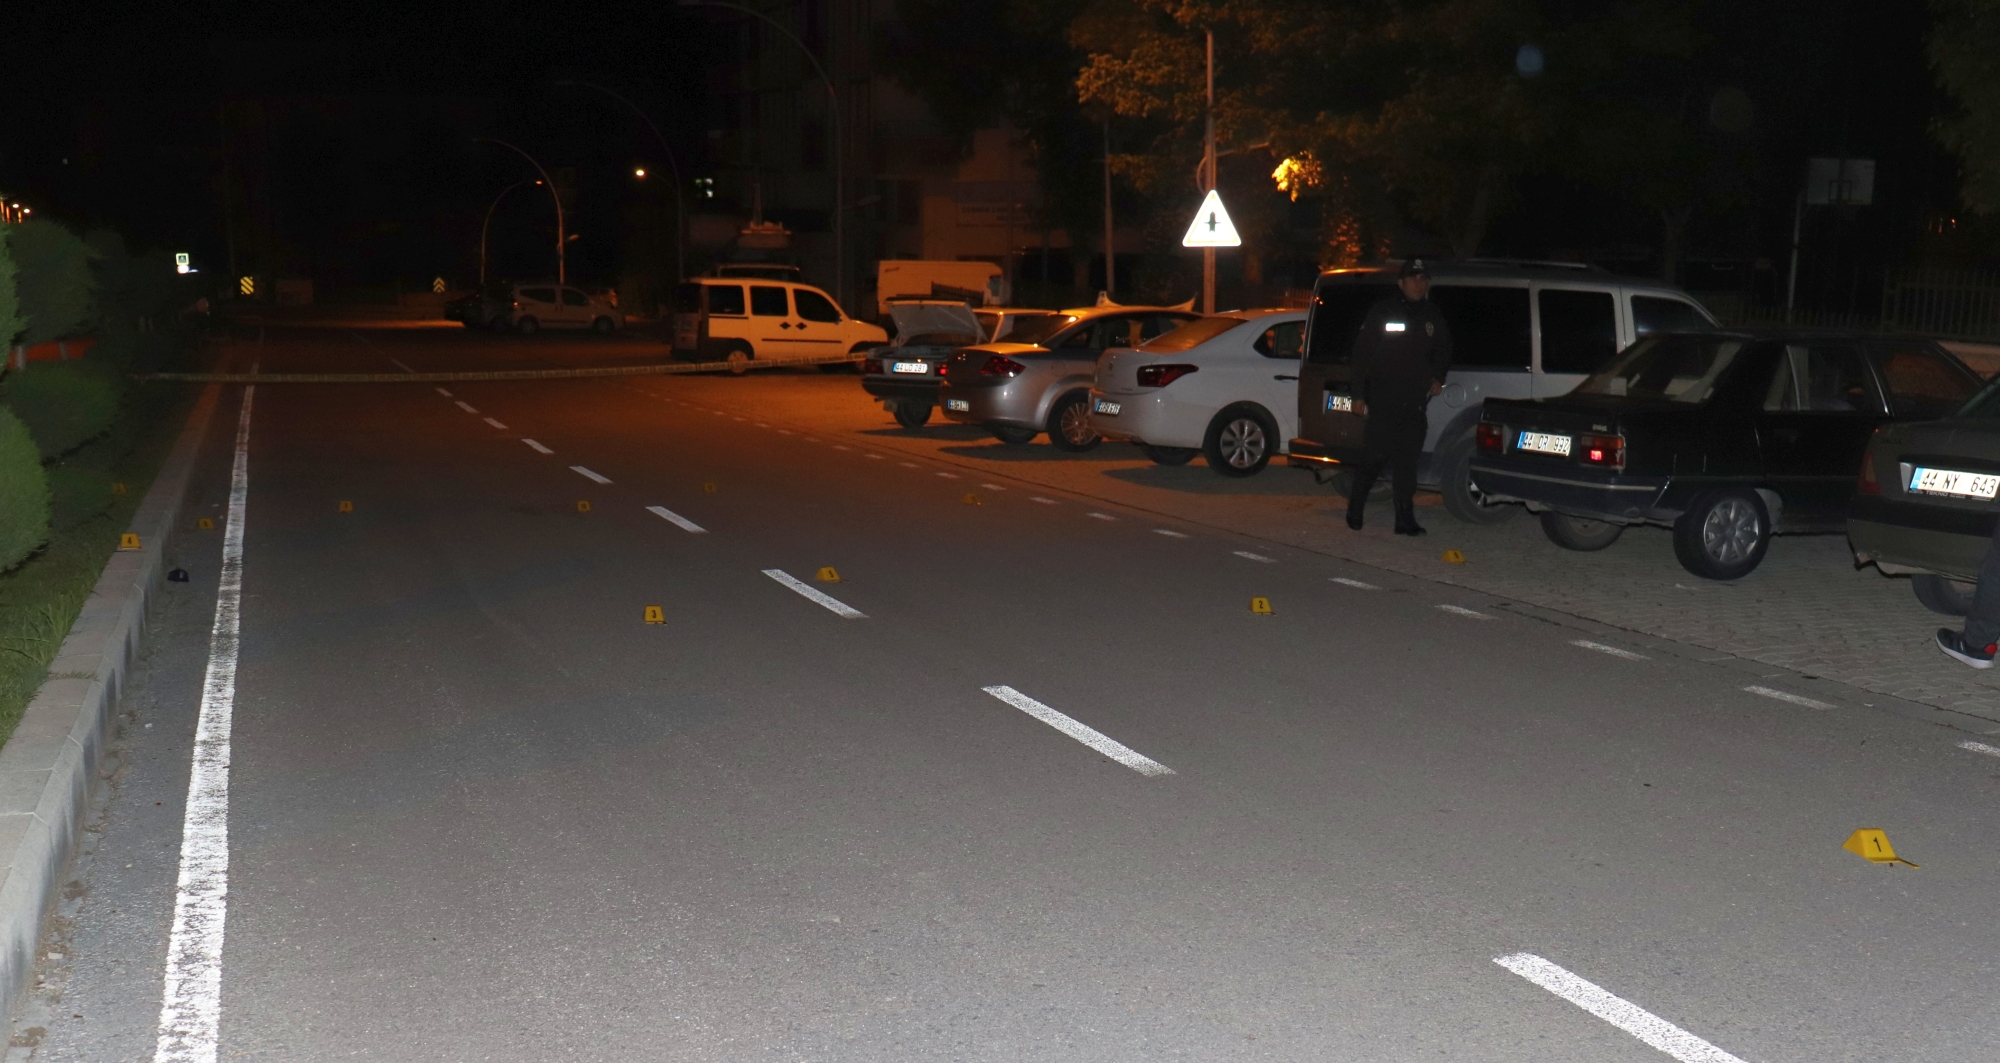 Malatya’da gece yarısı sokak ortasında meydana gelen karşılıklı silahla ateş açma olayında 3 kişi yaralanırken, polis ekipleri 2 silah ve 1 bıçak ele geçirdi.